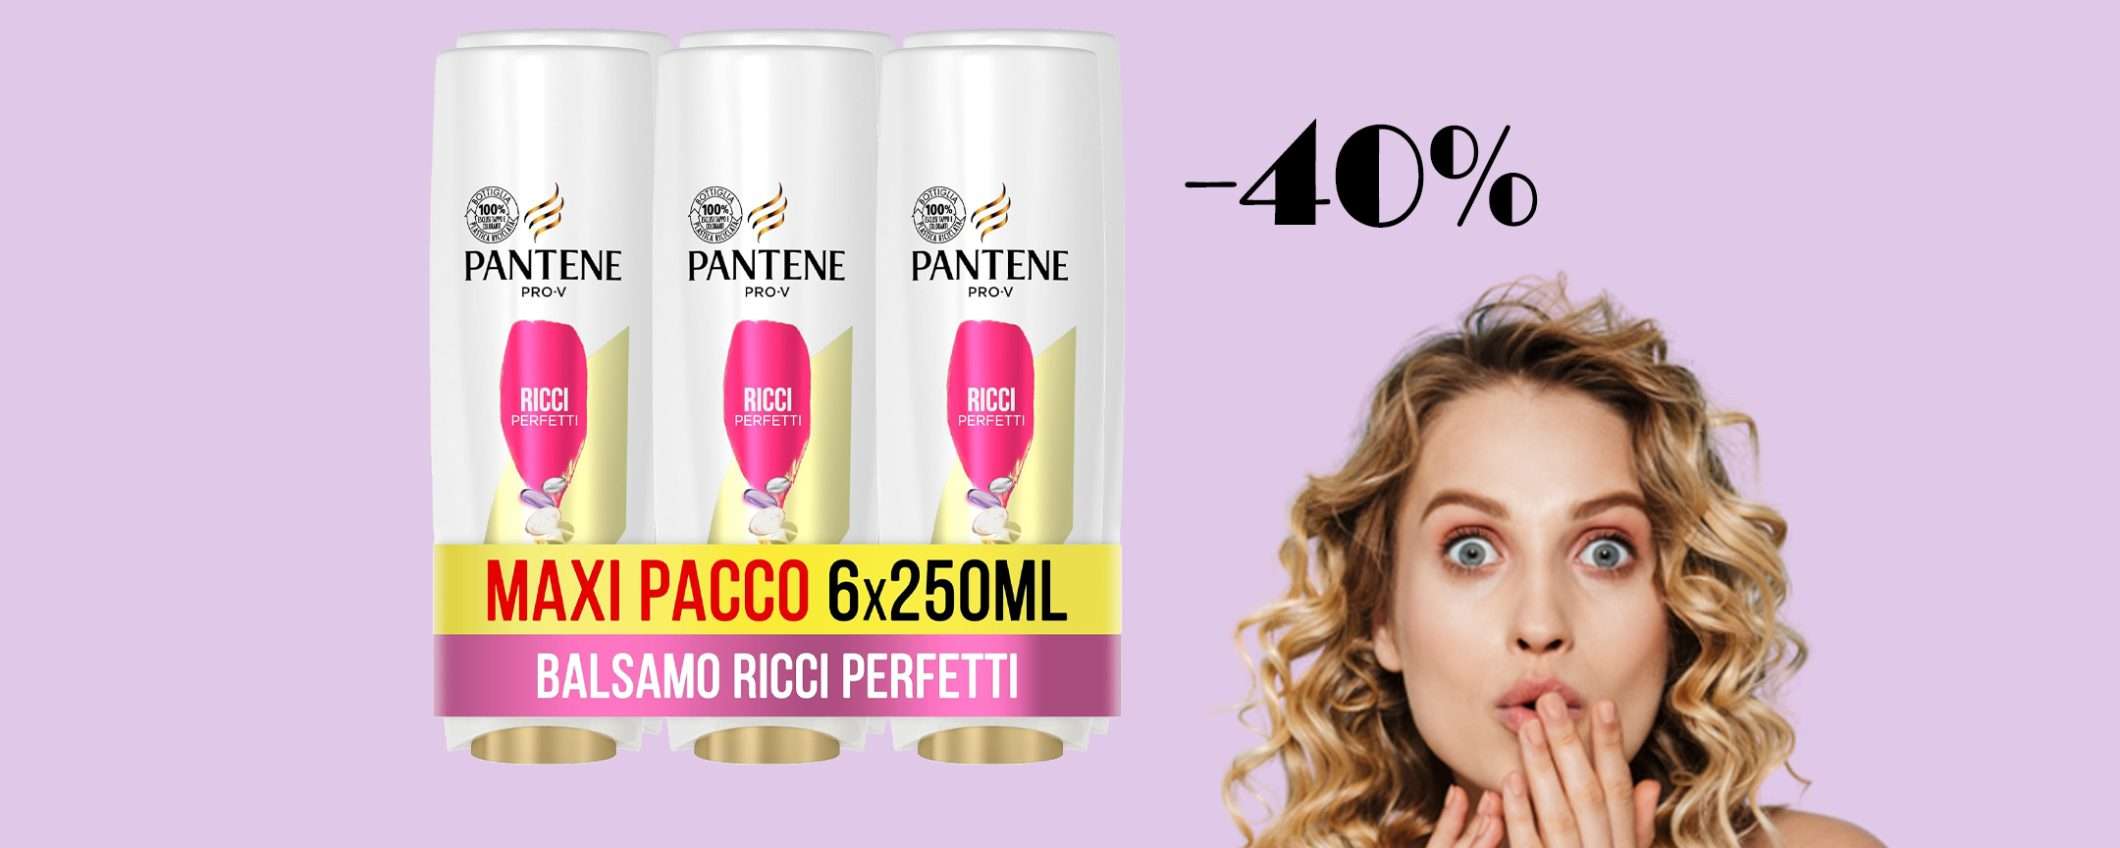 Balsamo Pantene Pro-V Ricci Perfetti (6x250ml) in sconto del 40%